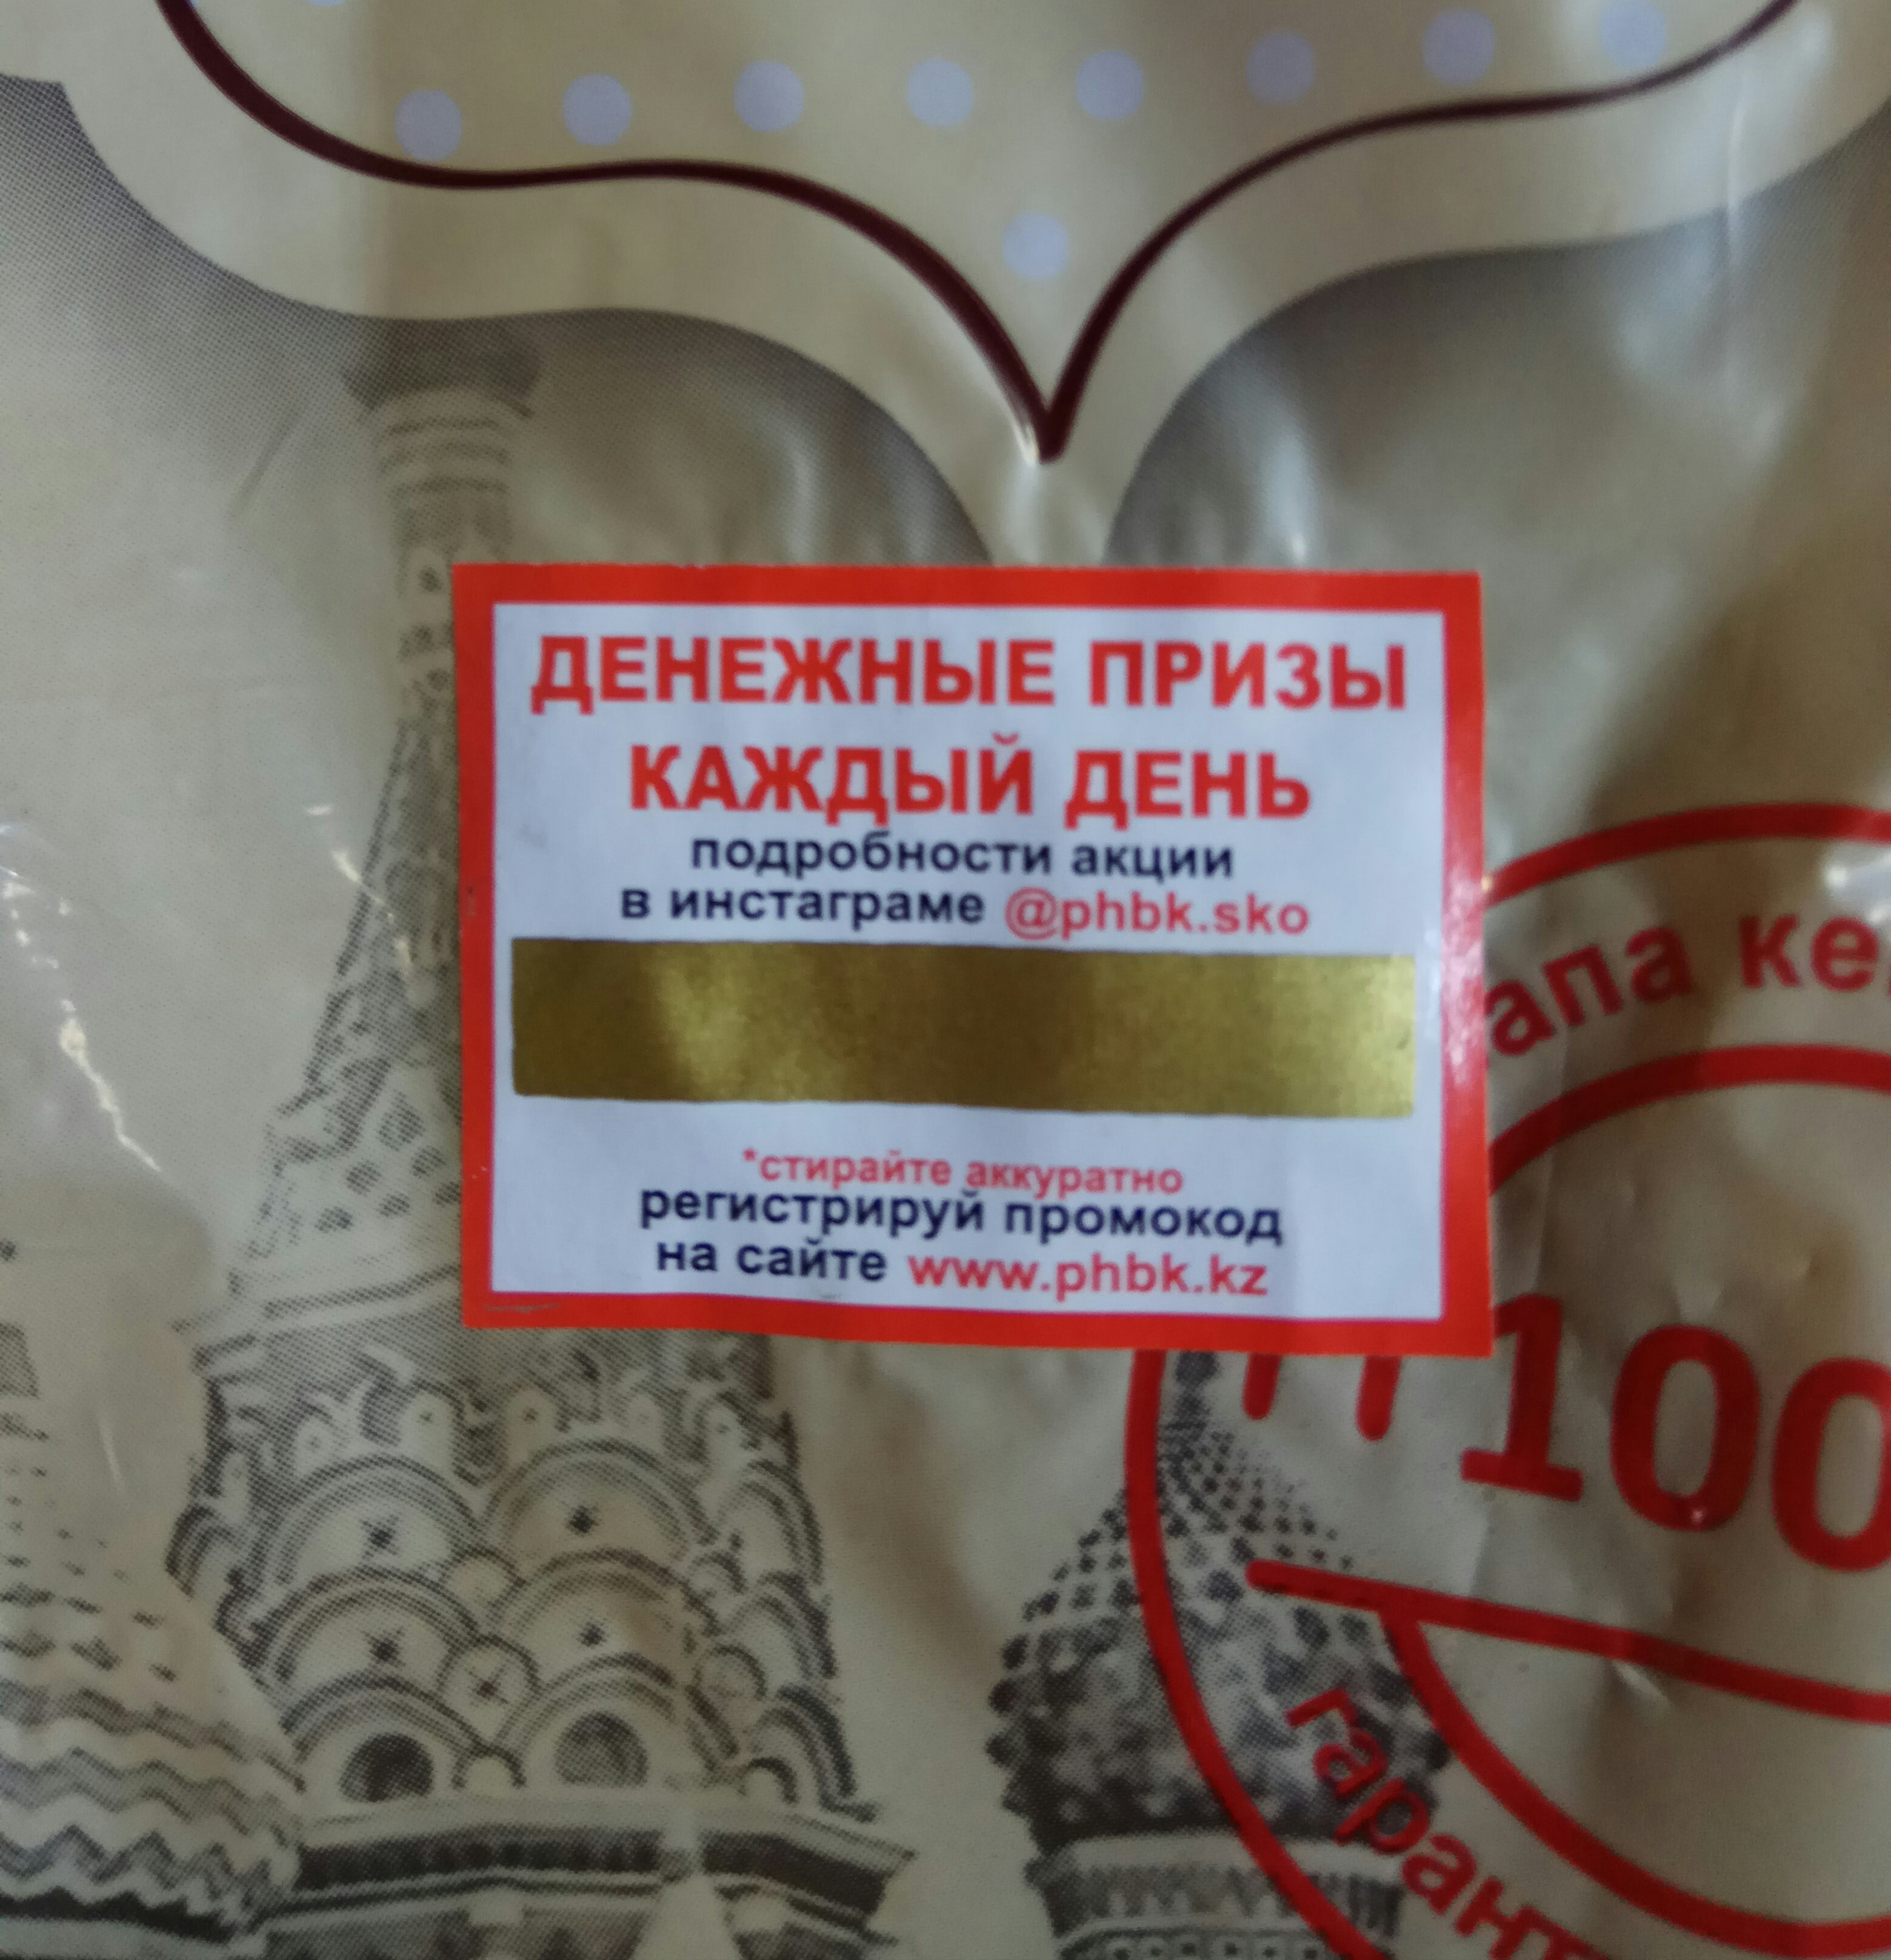 Хлеб ржаной Московский в нарезке, ПХБК г.Петропавловск, 500 гр.